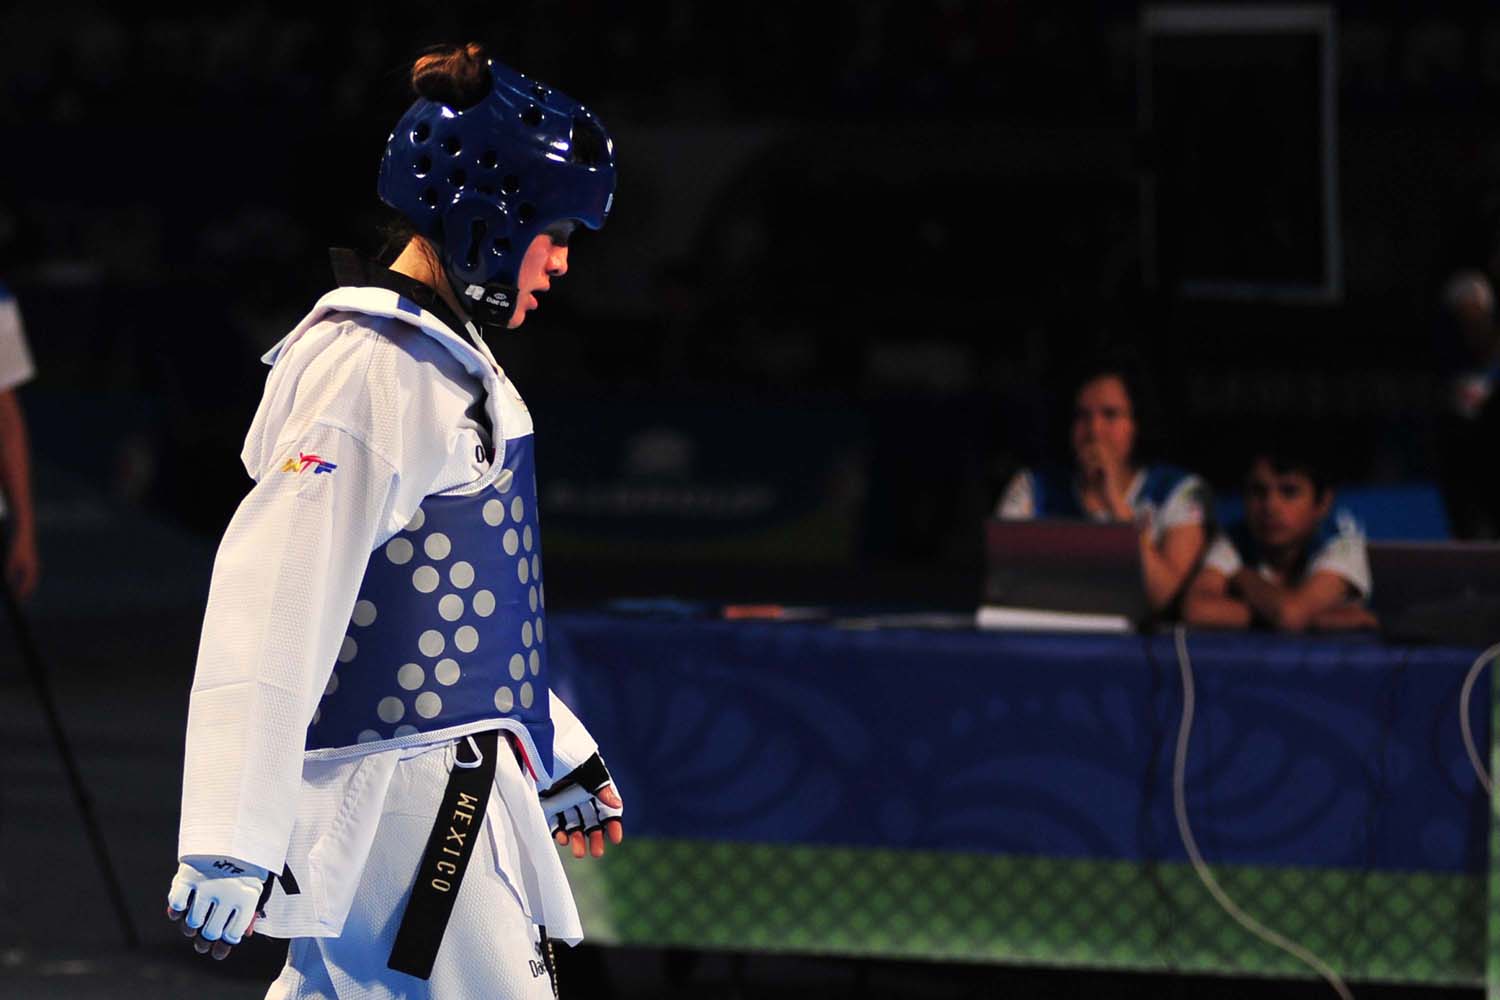  En taekwondo, María Espinoza podría ser número uno en Rio 2016